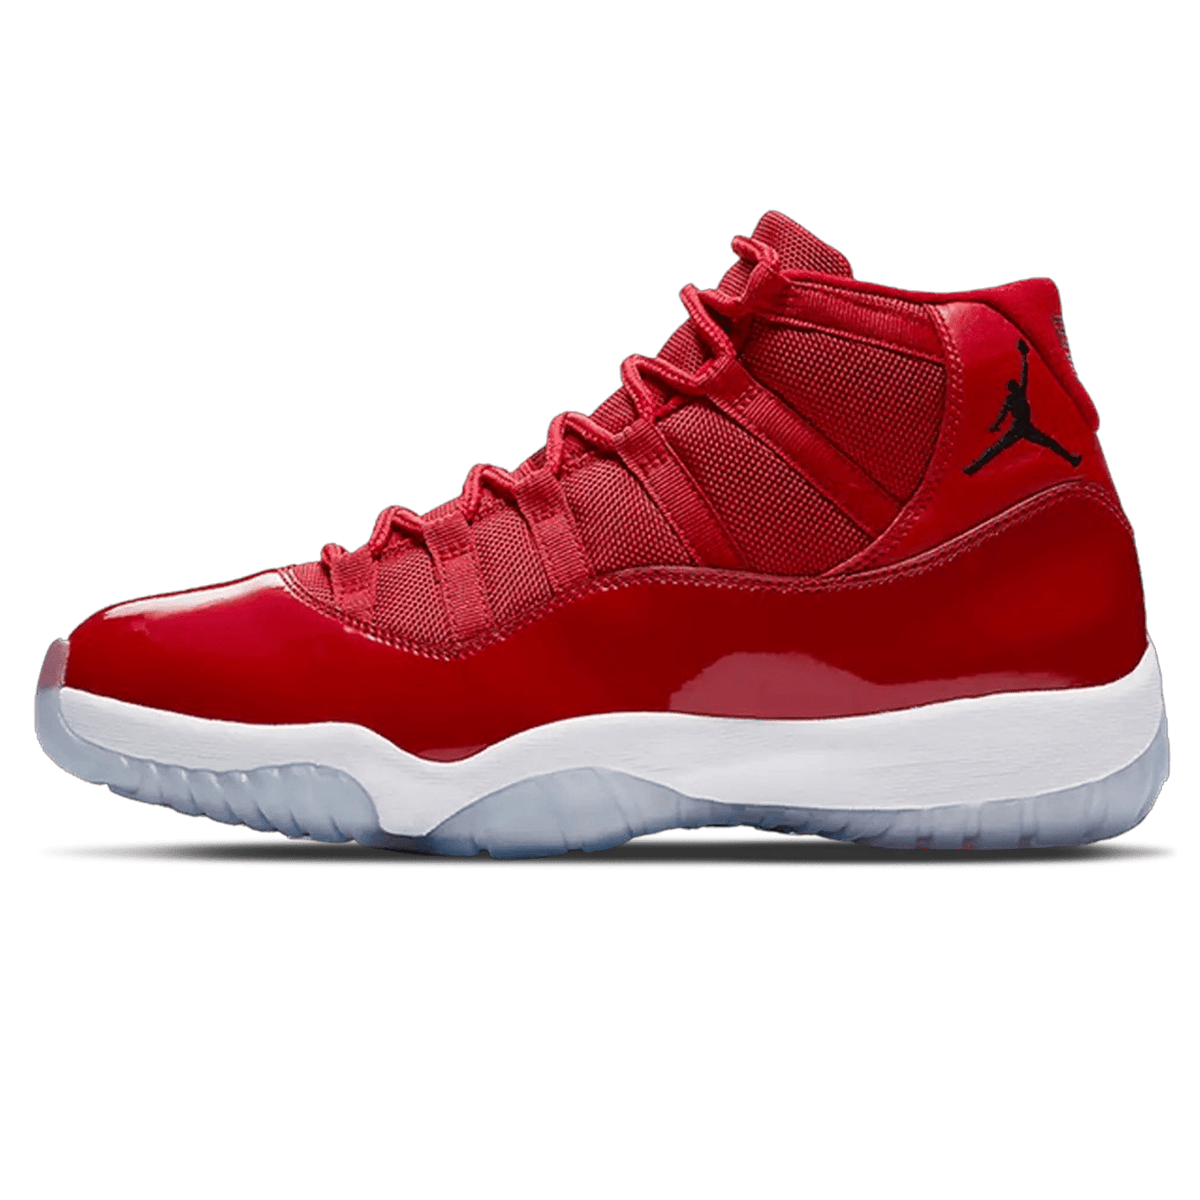 Jordan Fire Red Apparel1 Retro GS 'Win Like '96' - UrlfreezeShops